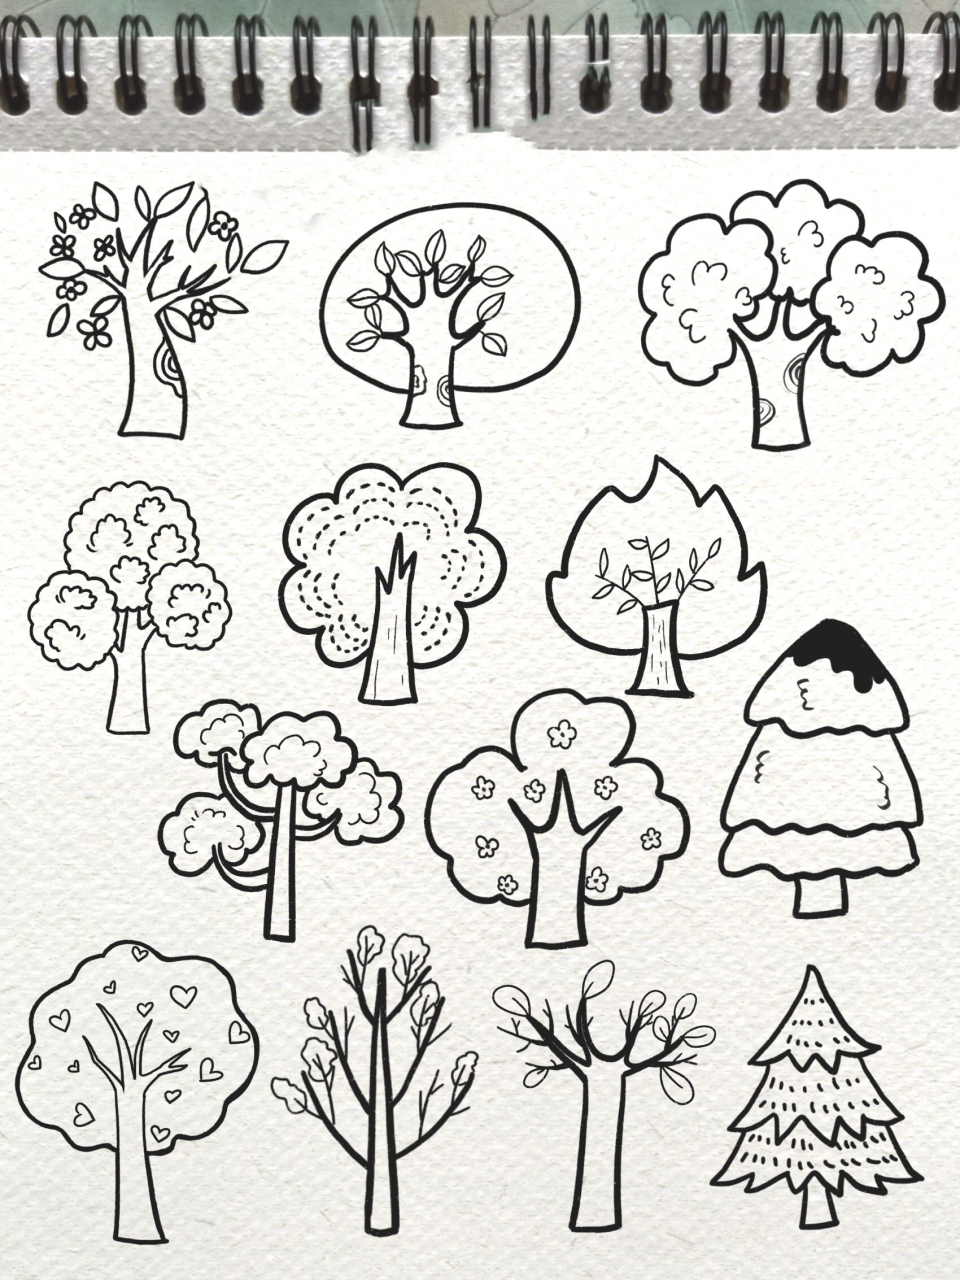 各种各样的树画画图片